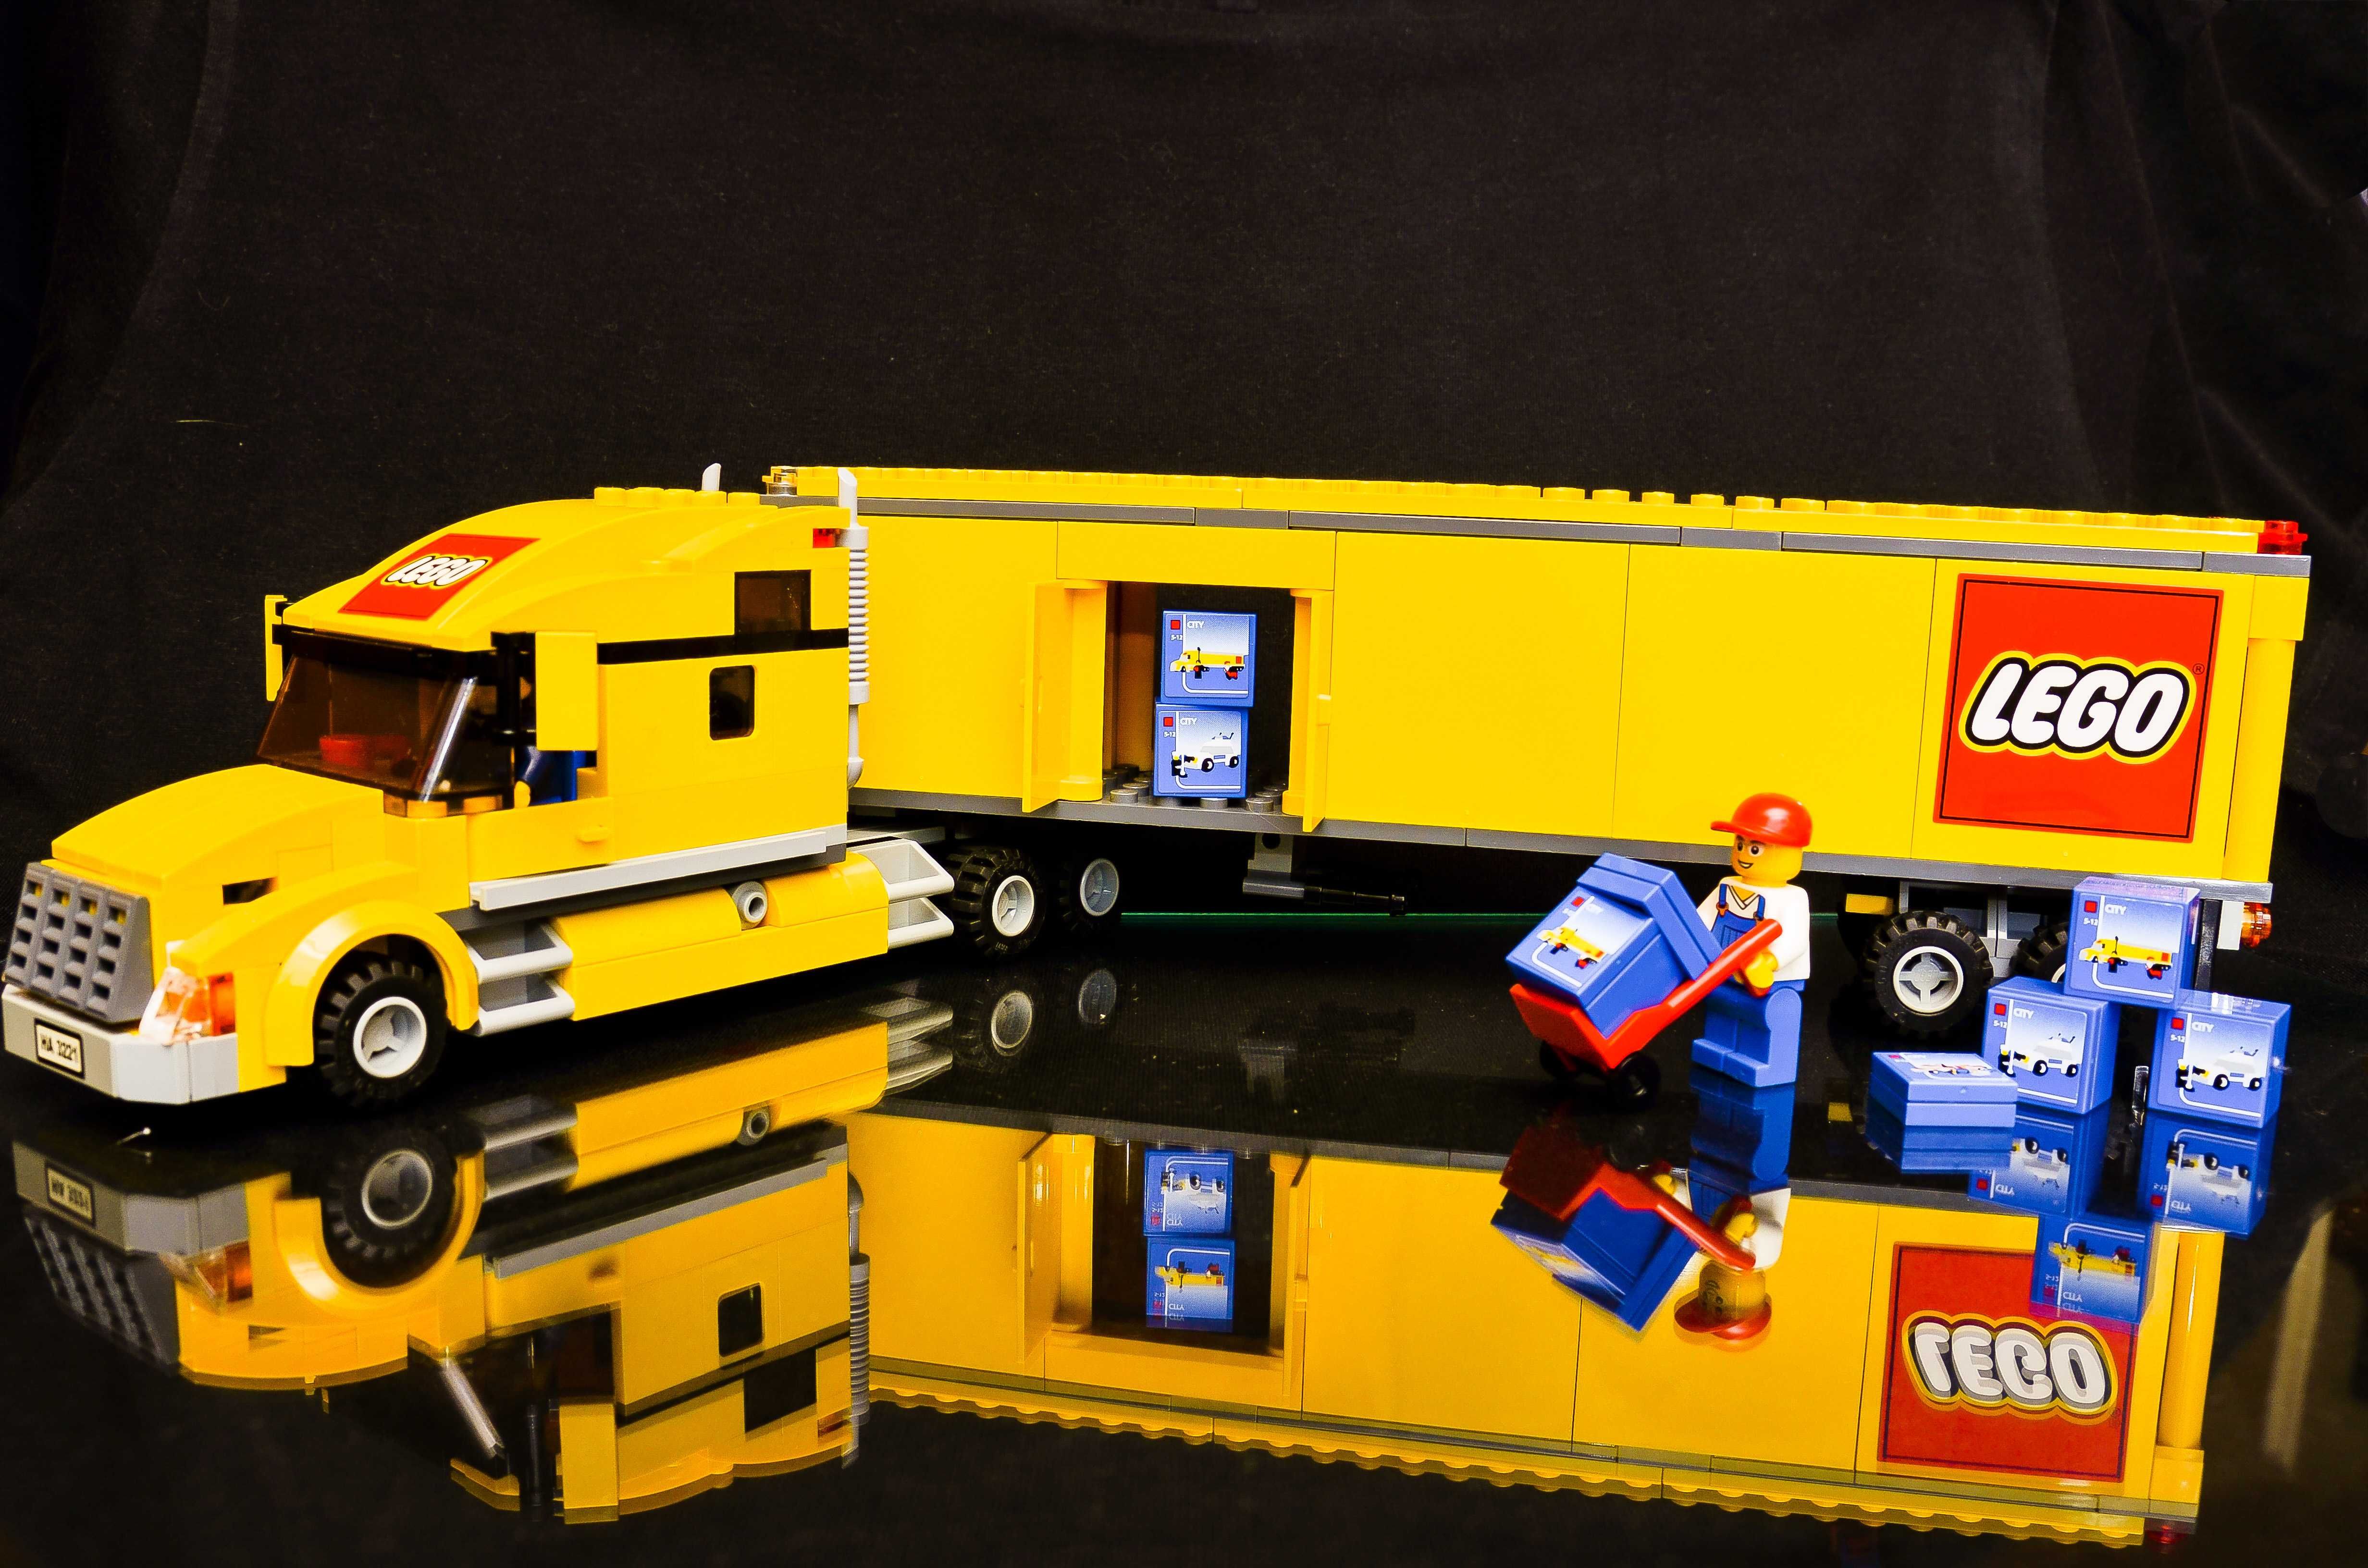 Klocki LEGO® 3221 Ciężarówka